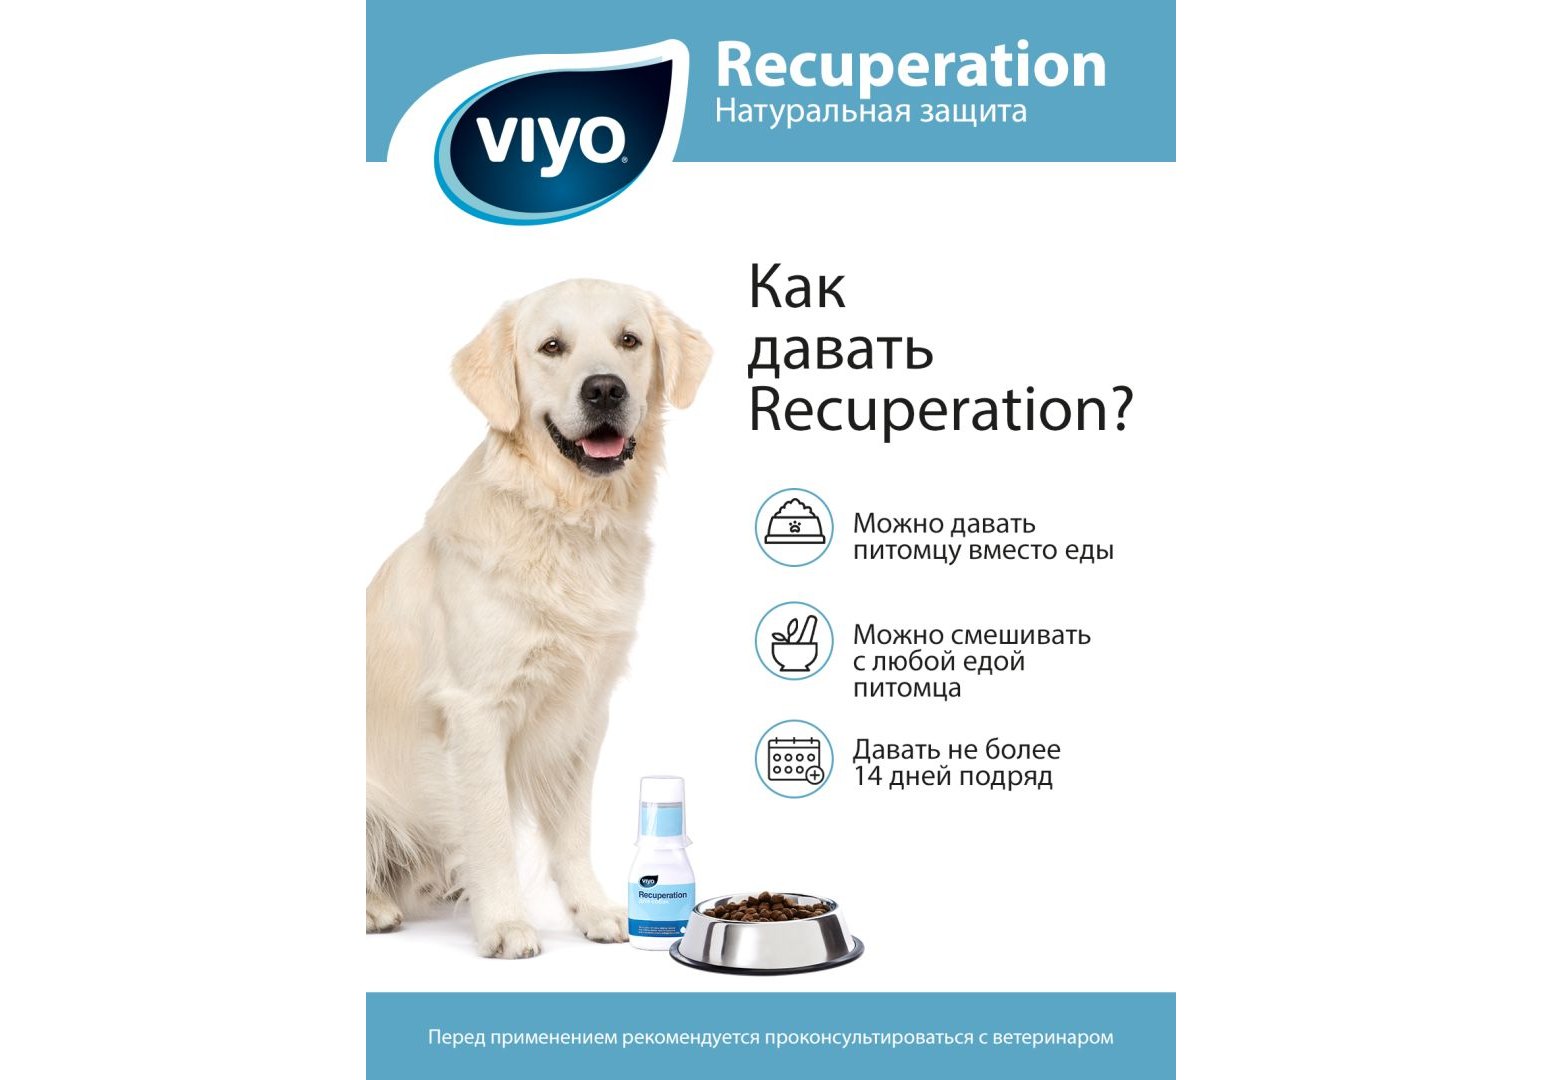 VIYO Recuperation / Питательный напиток Вийо для собак всех возрастов 150  мл купить в Москве по низкой цене 920₽ | интернет-магазин ZooMag.ru